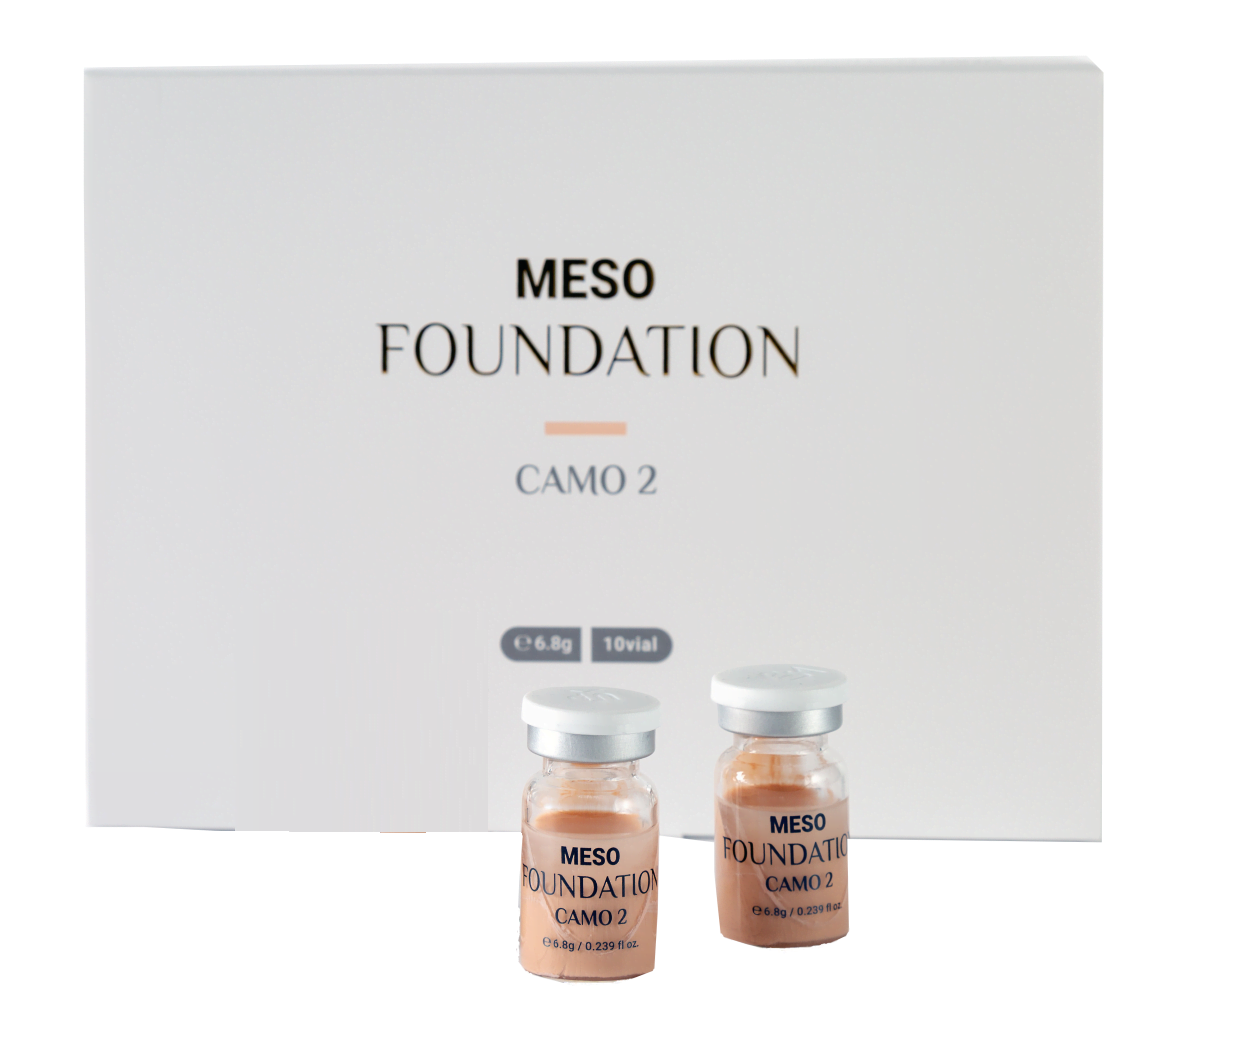 физиолаб мезо фундатион bb-сыворотка тон-2 6,8 г 10 амп (physiolab meso foundation (camo 2)